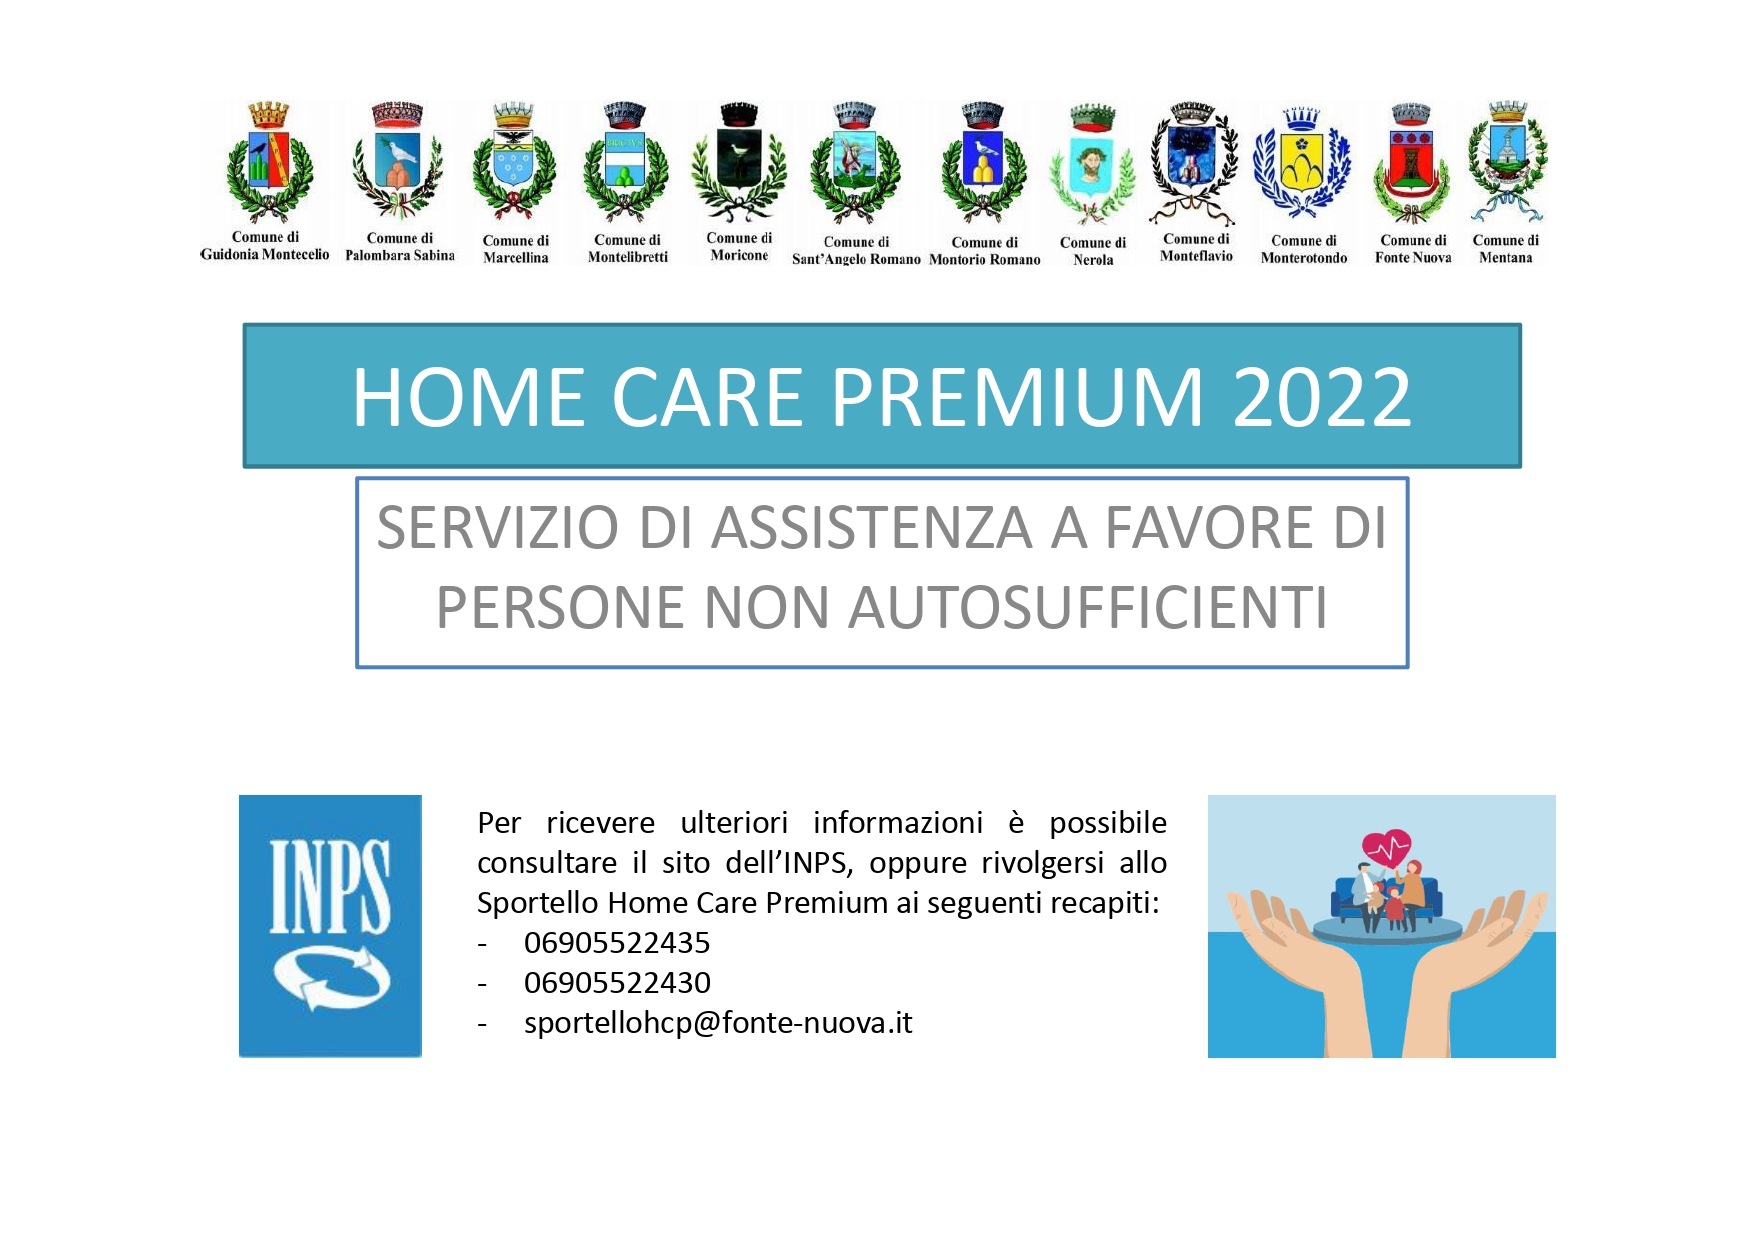 HOME CARE PREMIUM 2022 - Servizio di assistenza a favore di persone non autosufficienti